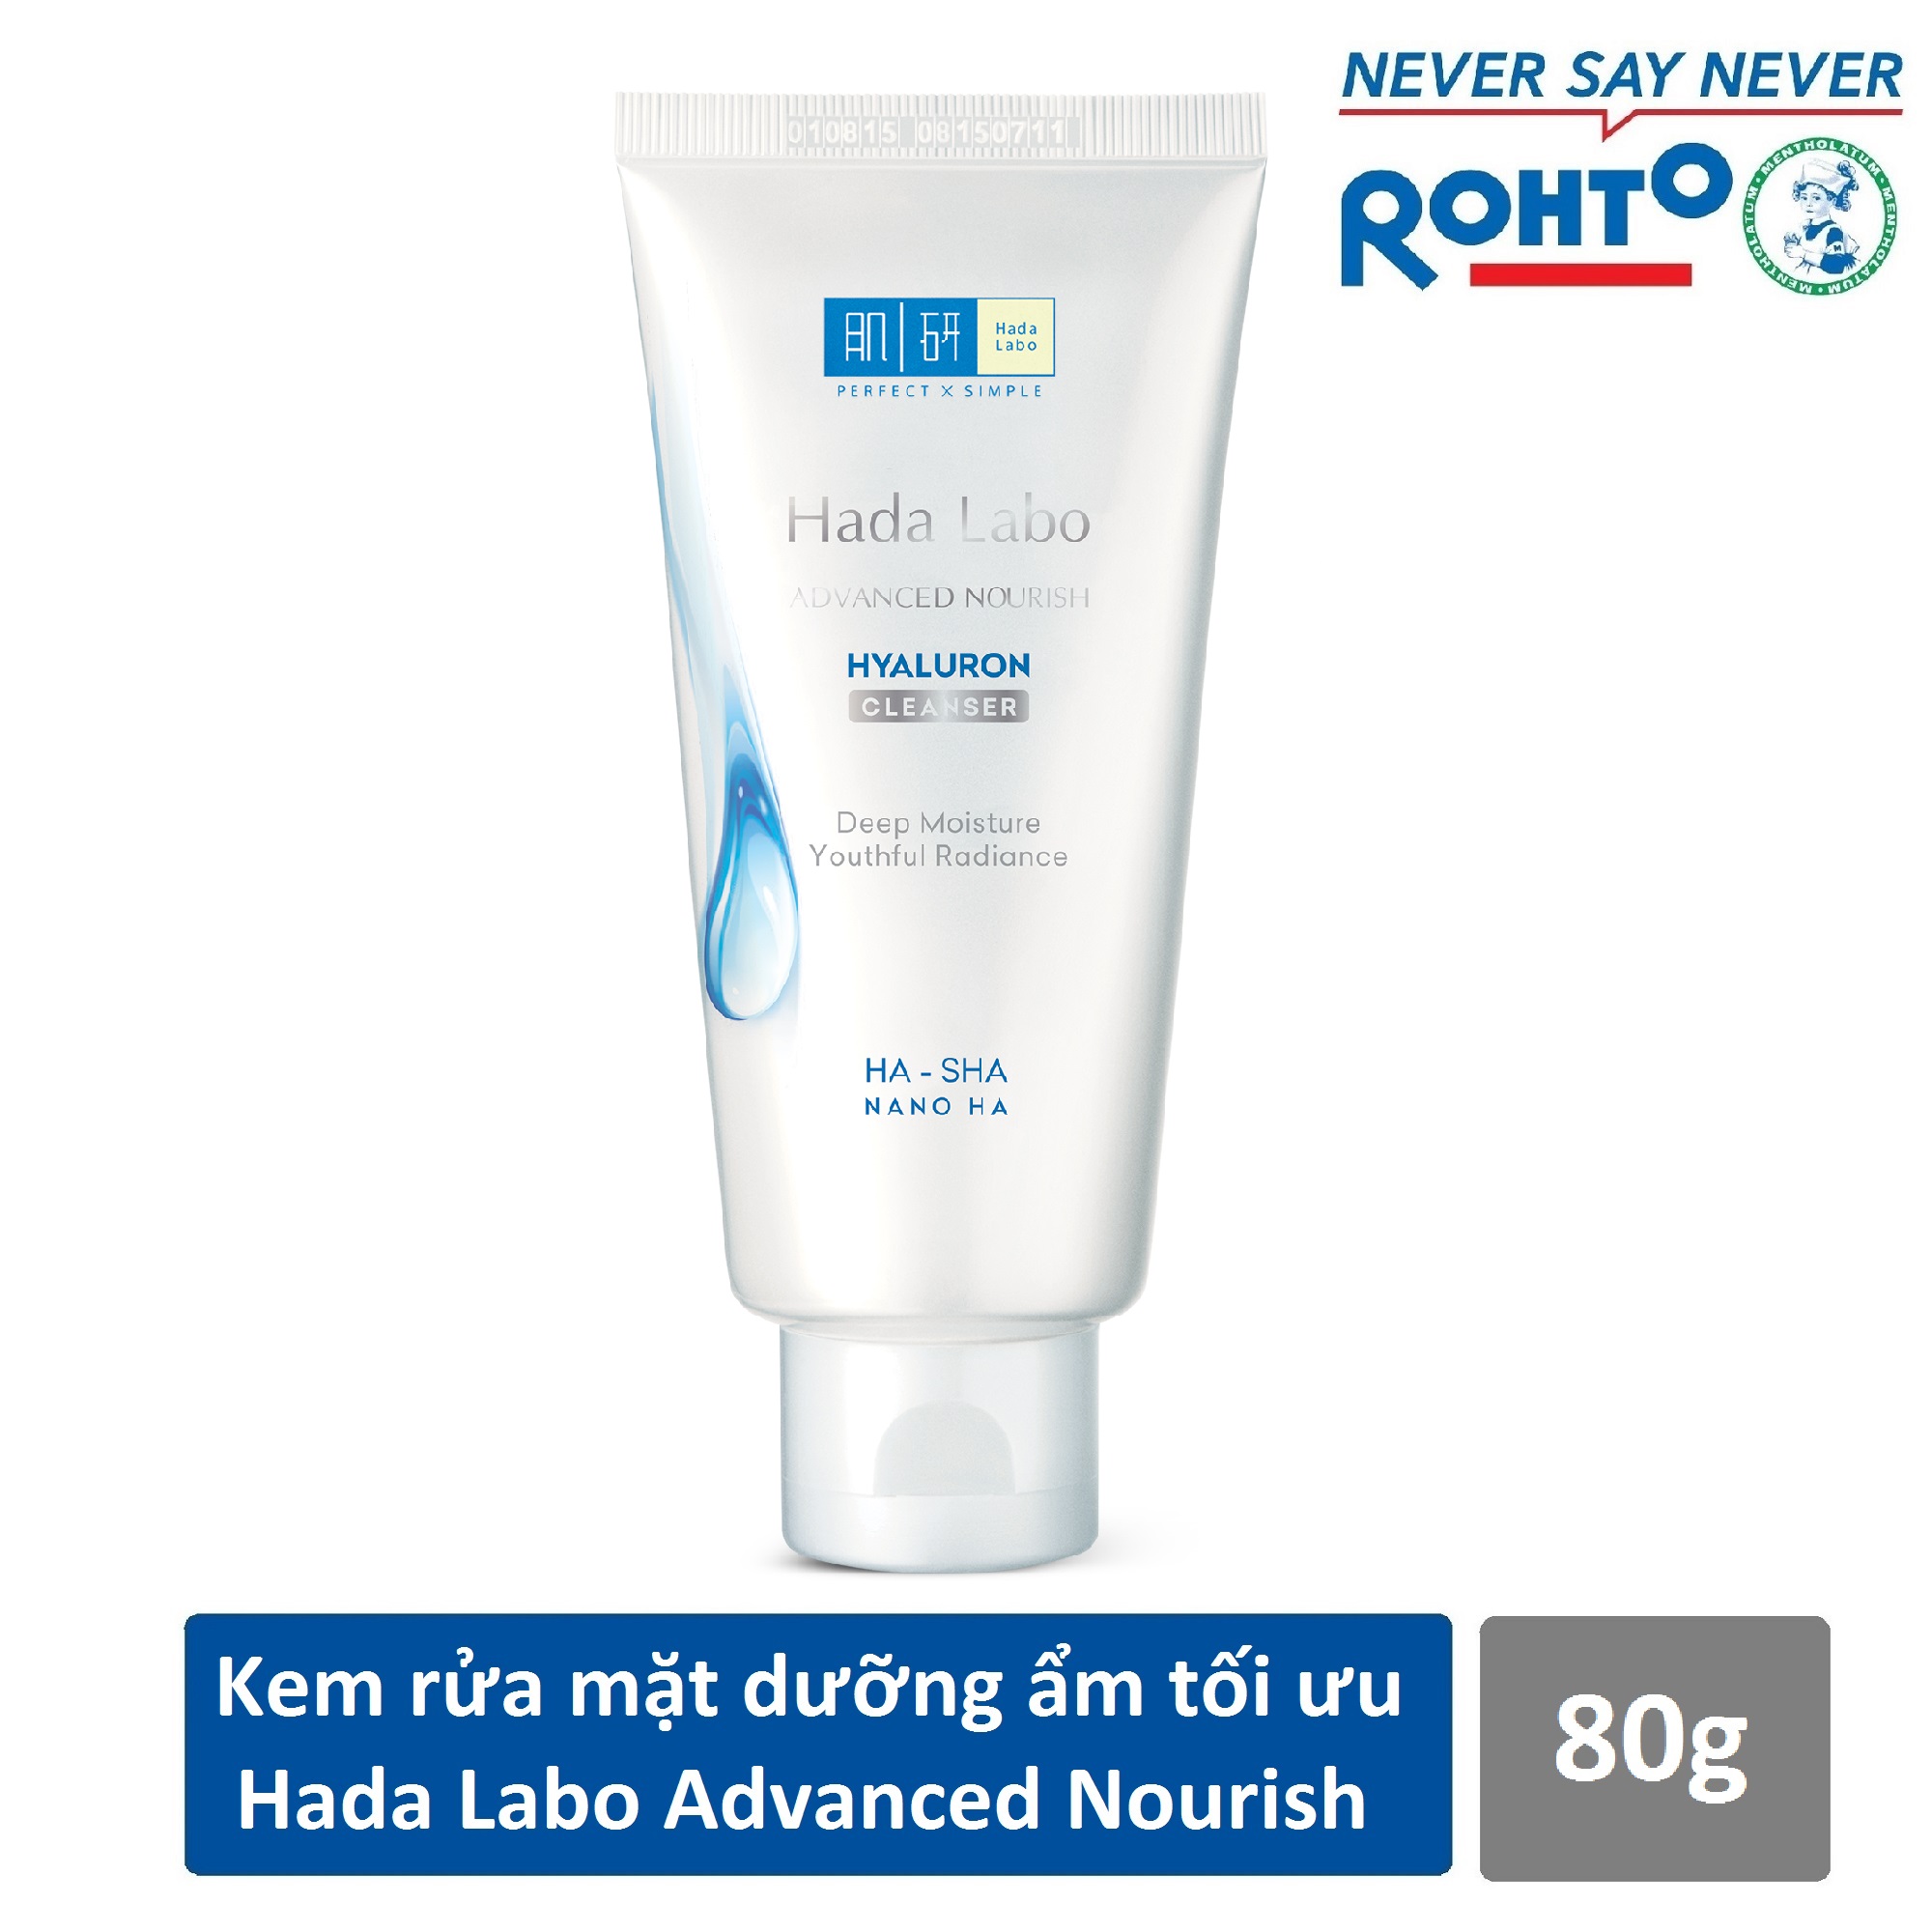 Bộ sản phẩm dưỡng ẩm tối ưu Hada Labo Advanced Nourish (Dầu tẩy trang 200ml + Kem rửa mặt 80g + Dung dịch dưỡng 100ml + Kem dưỡng 50g)